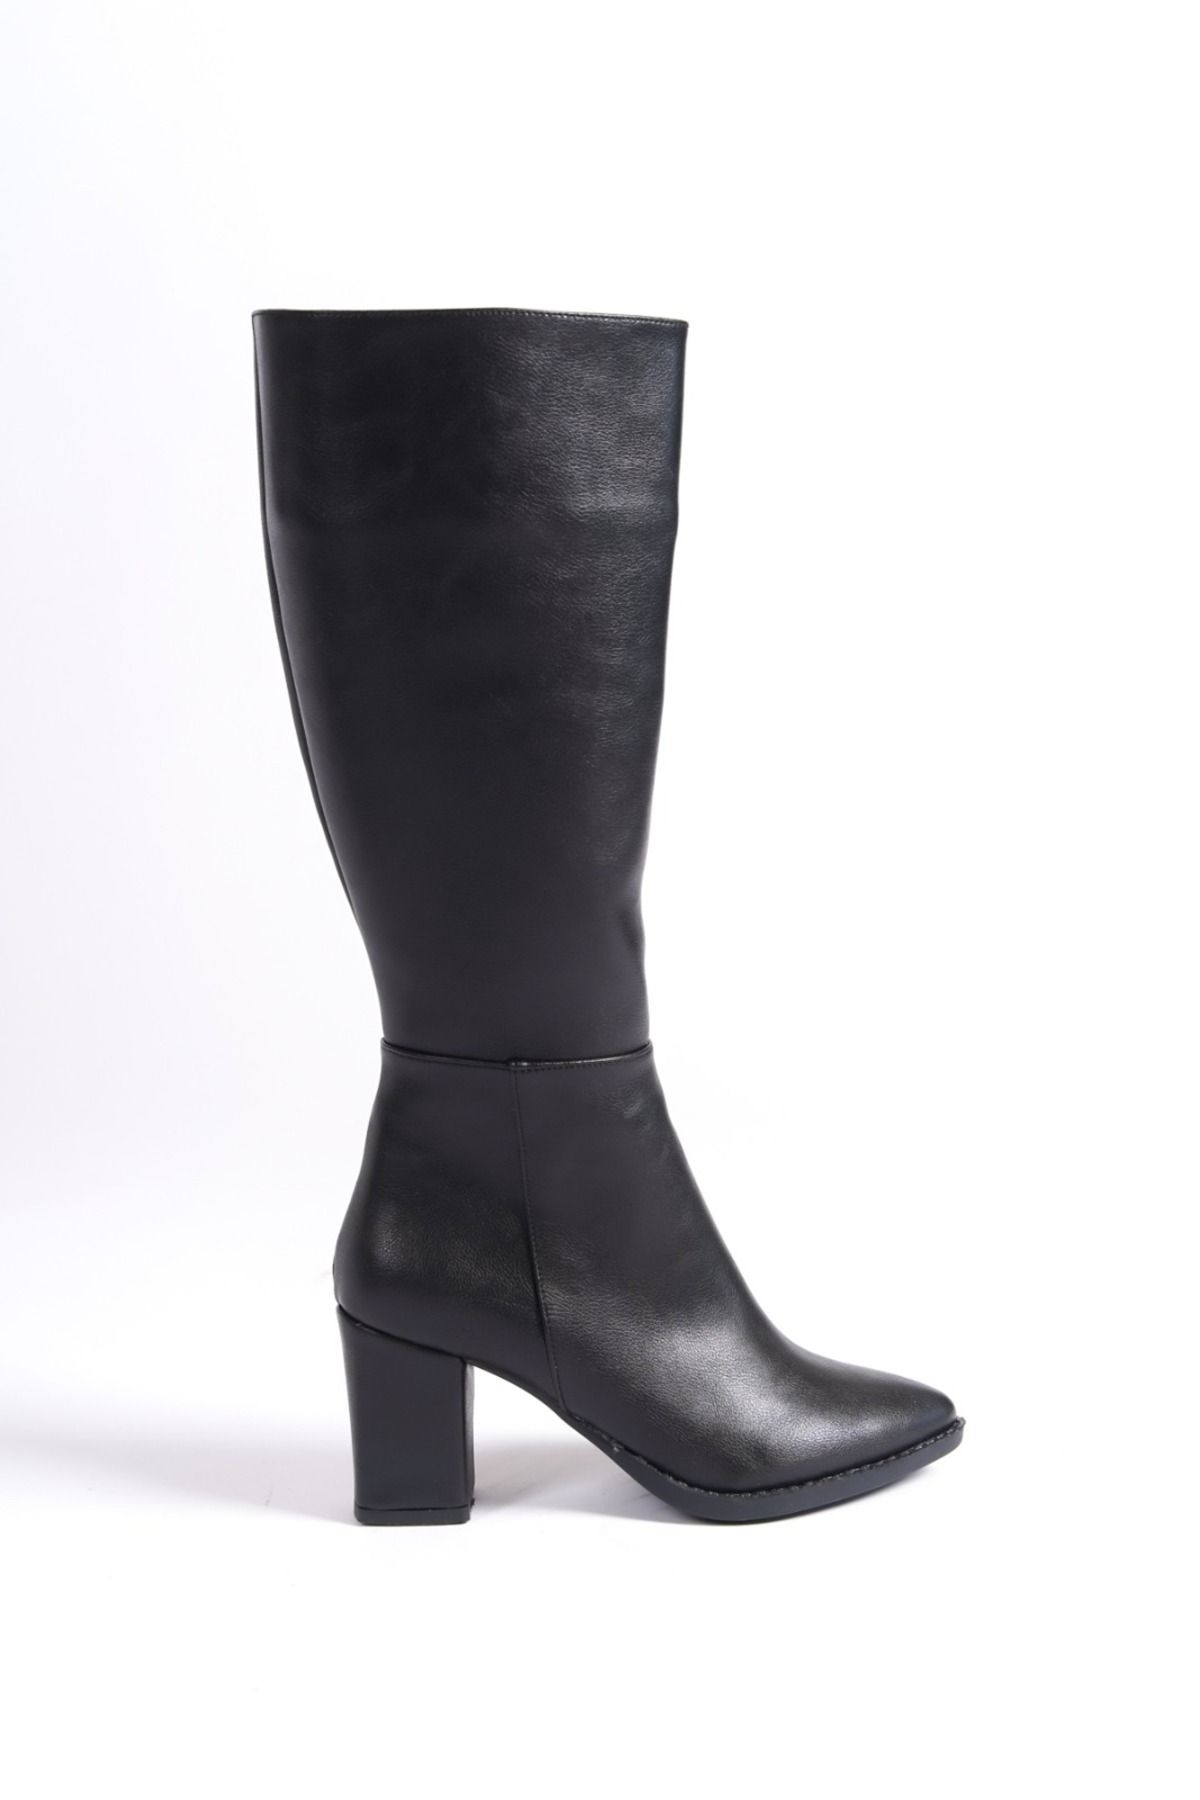 Taf Shoes Kadın Siyah 7cm Topuklu Deri Görünümlü Çizme Fiyatı ...